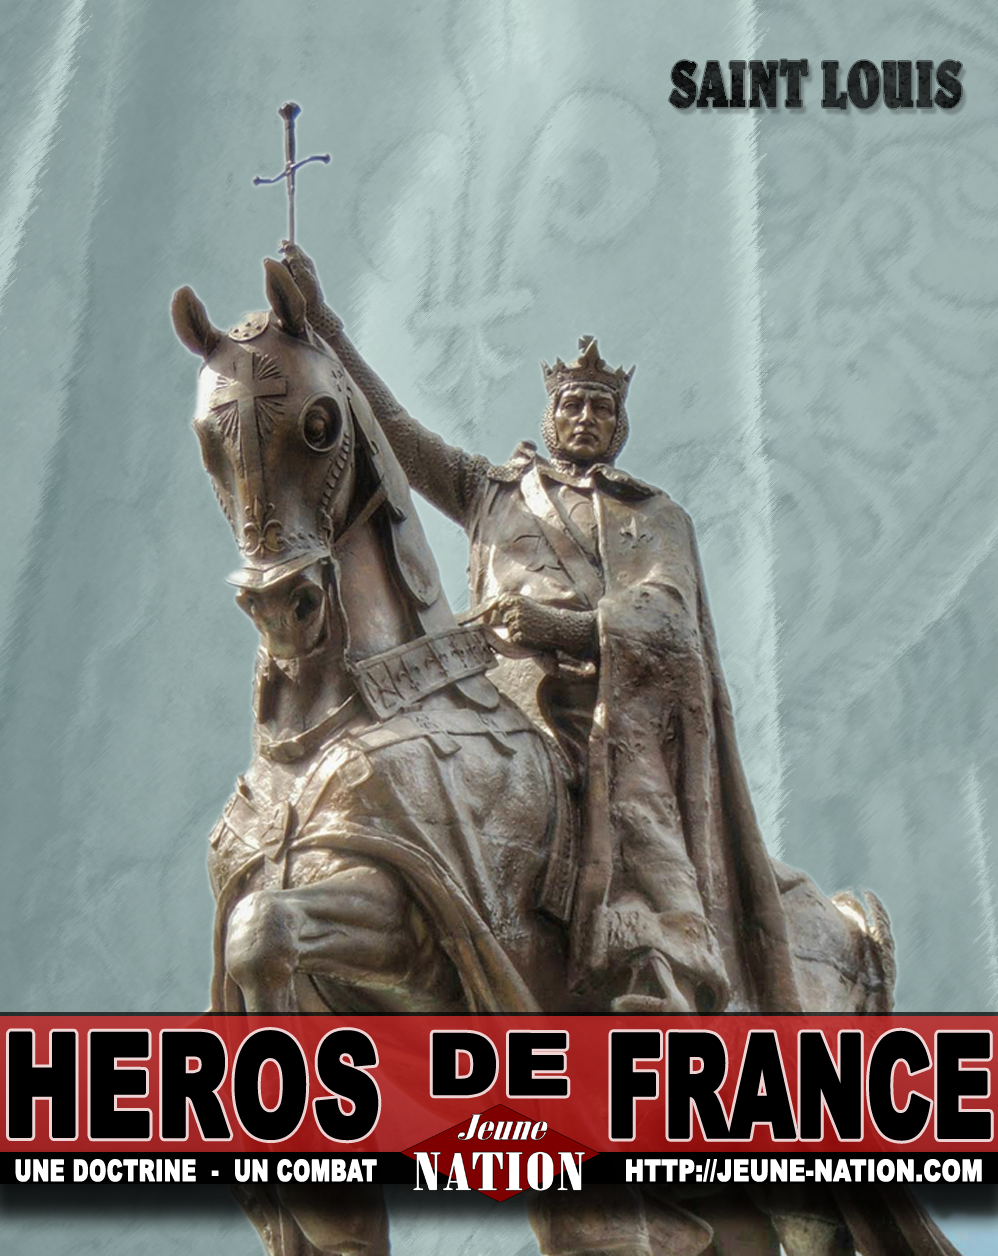 heros-de-france-saint-louis-jeune-nation-